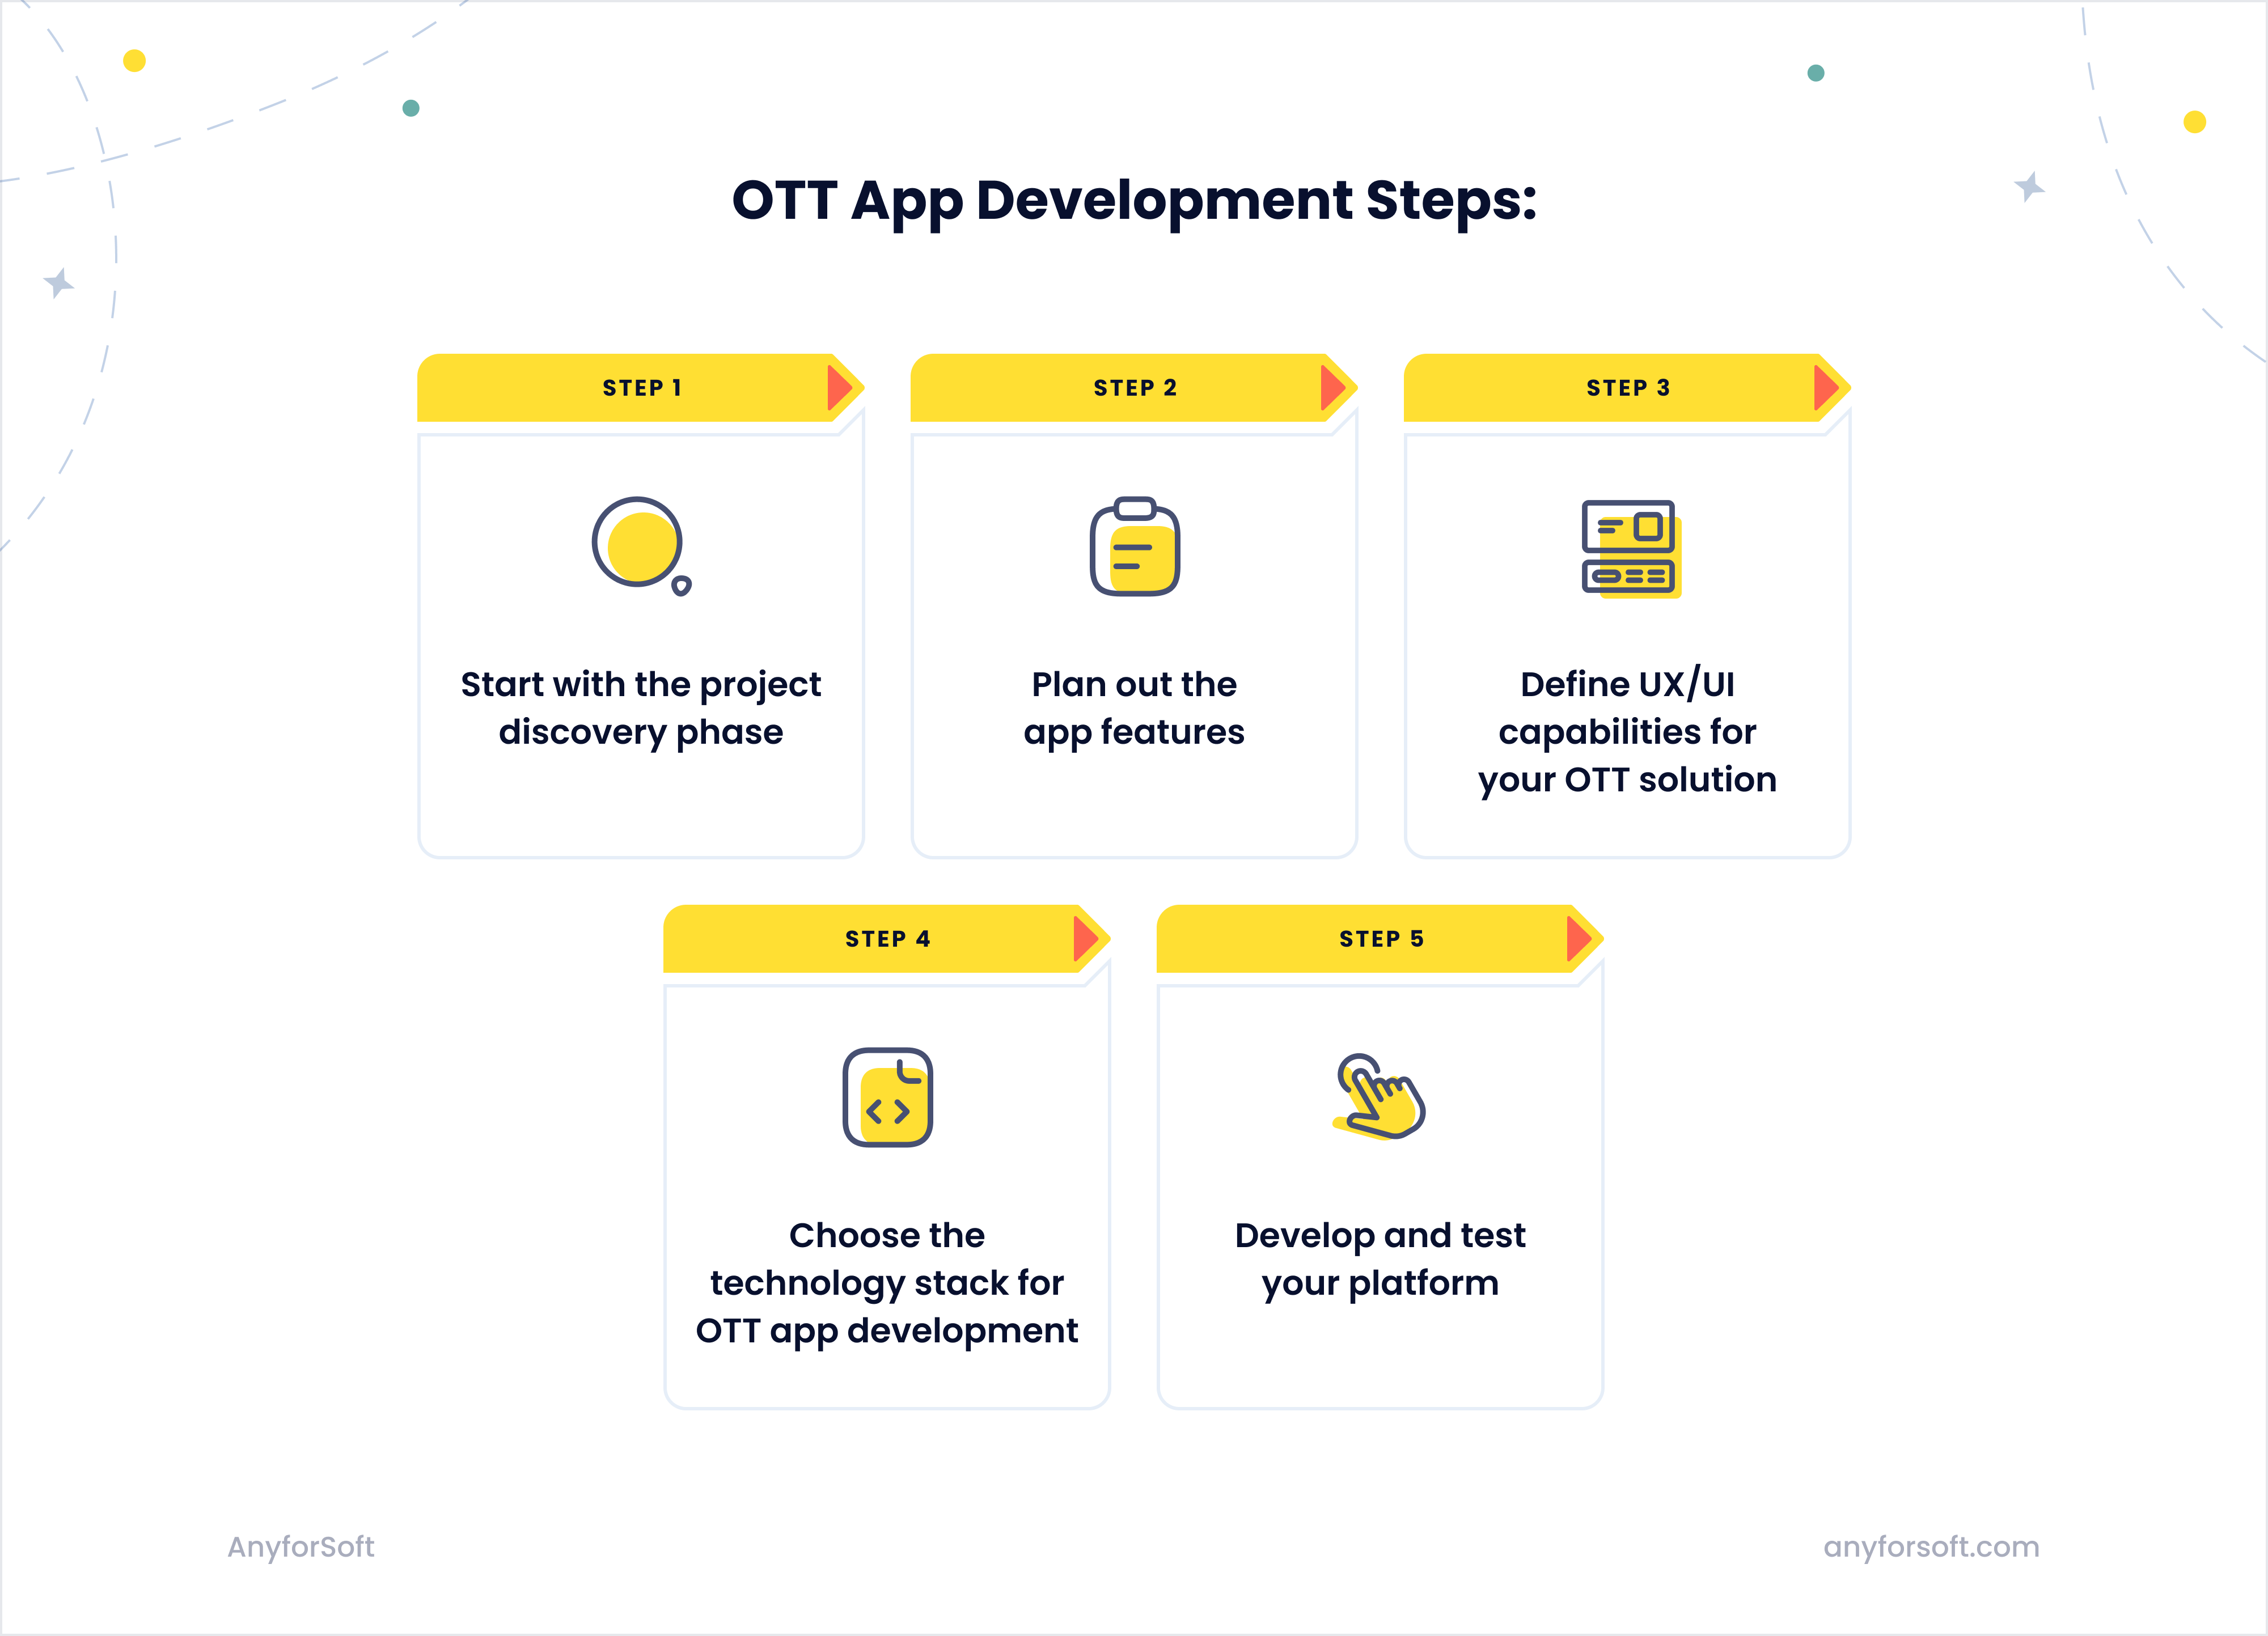 OTT app development: 5 steps